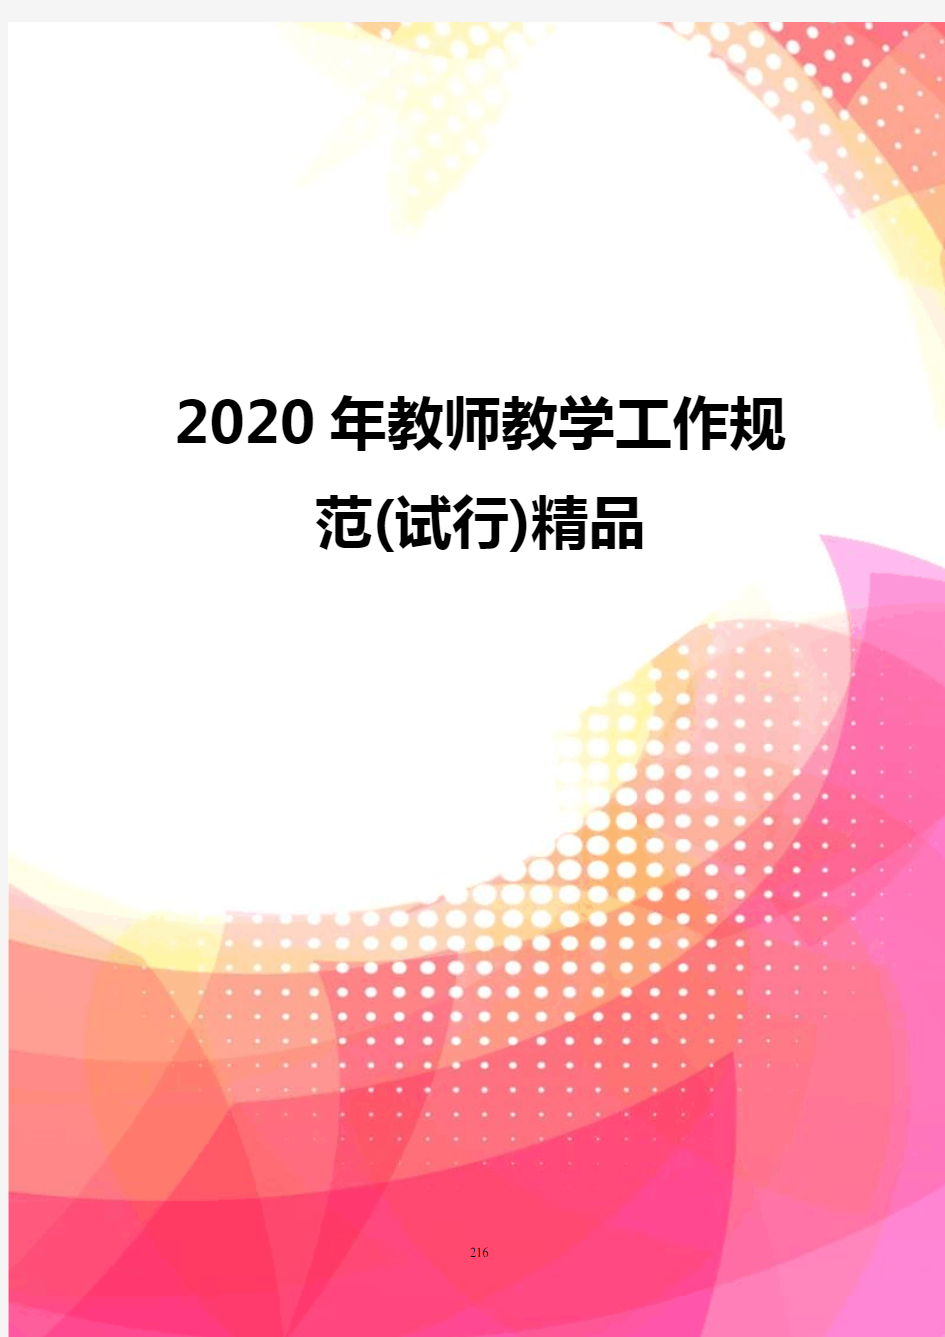 2020年教师教学工作规范(试行)精品